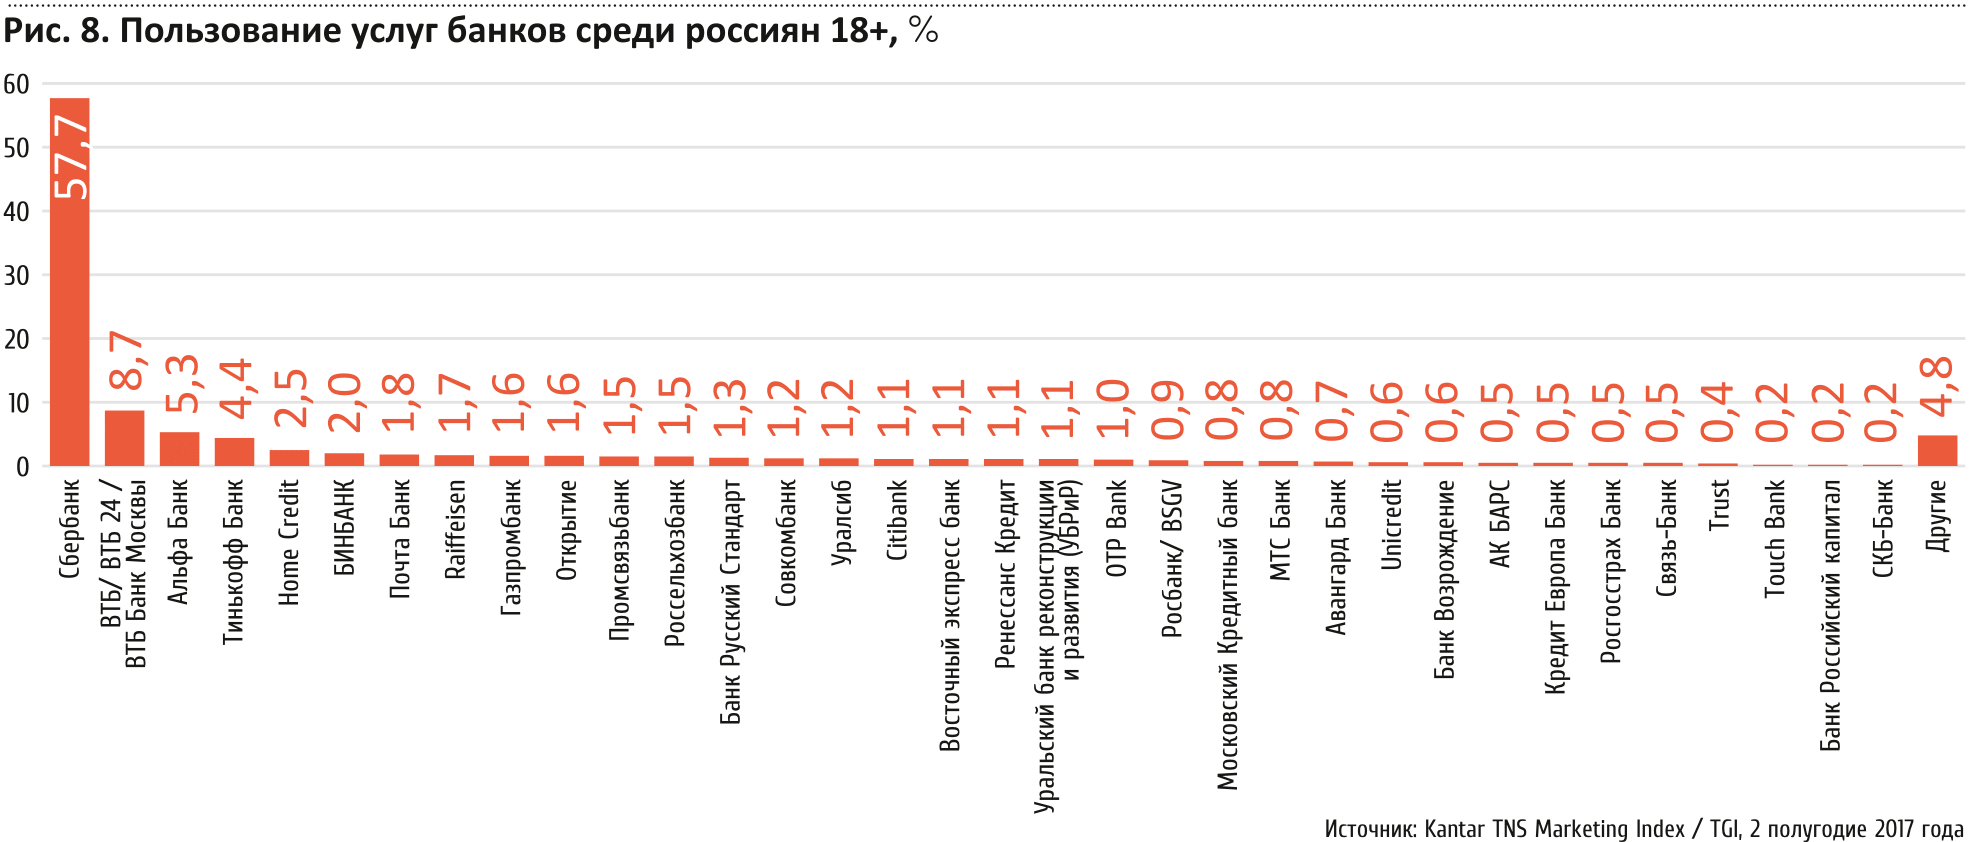 Рис. 8. Пользование услугами банков среди россиян 18+, %